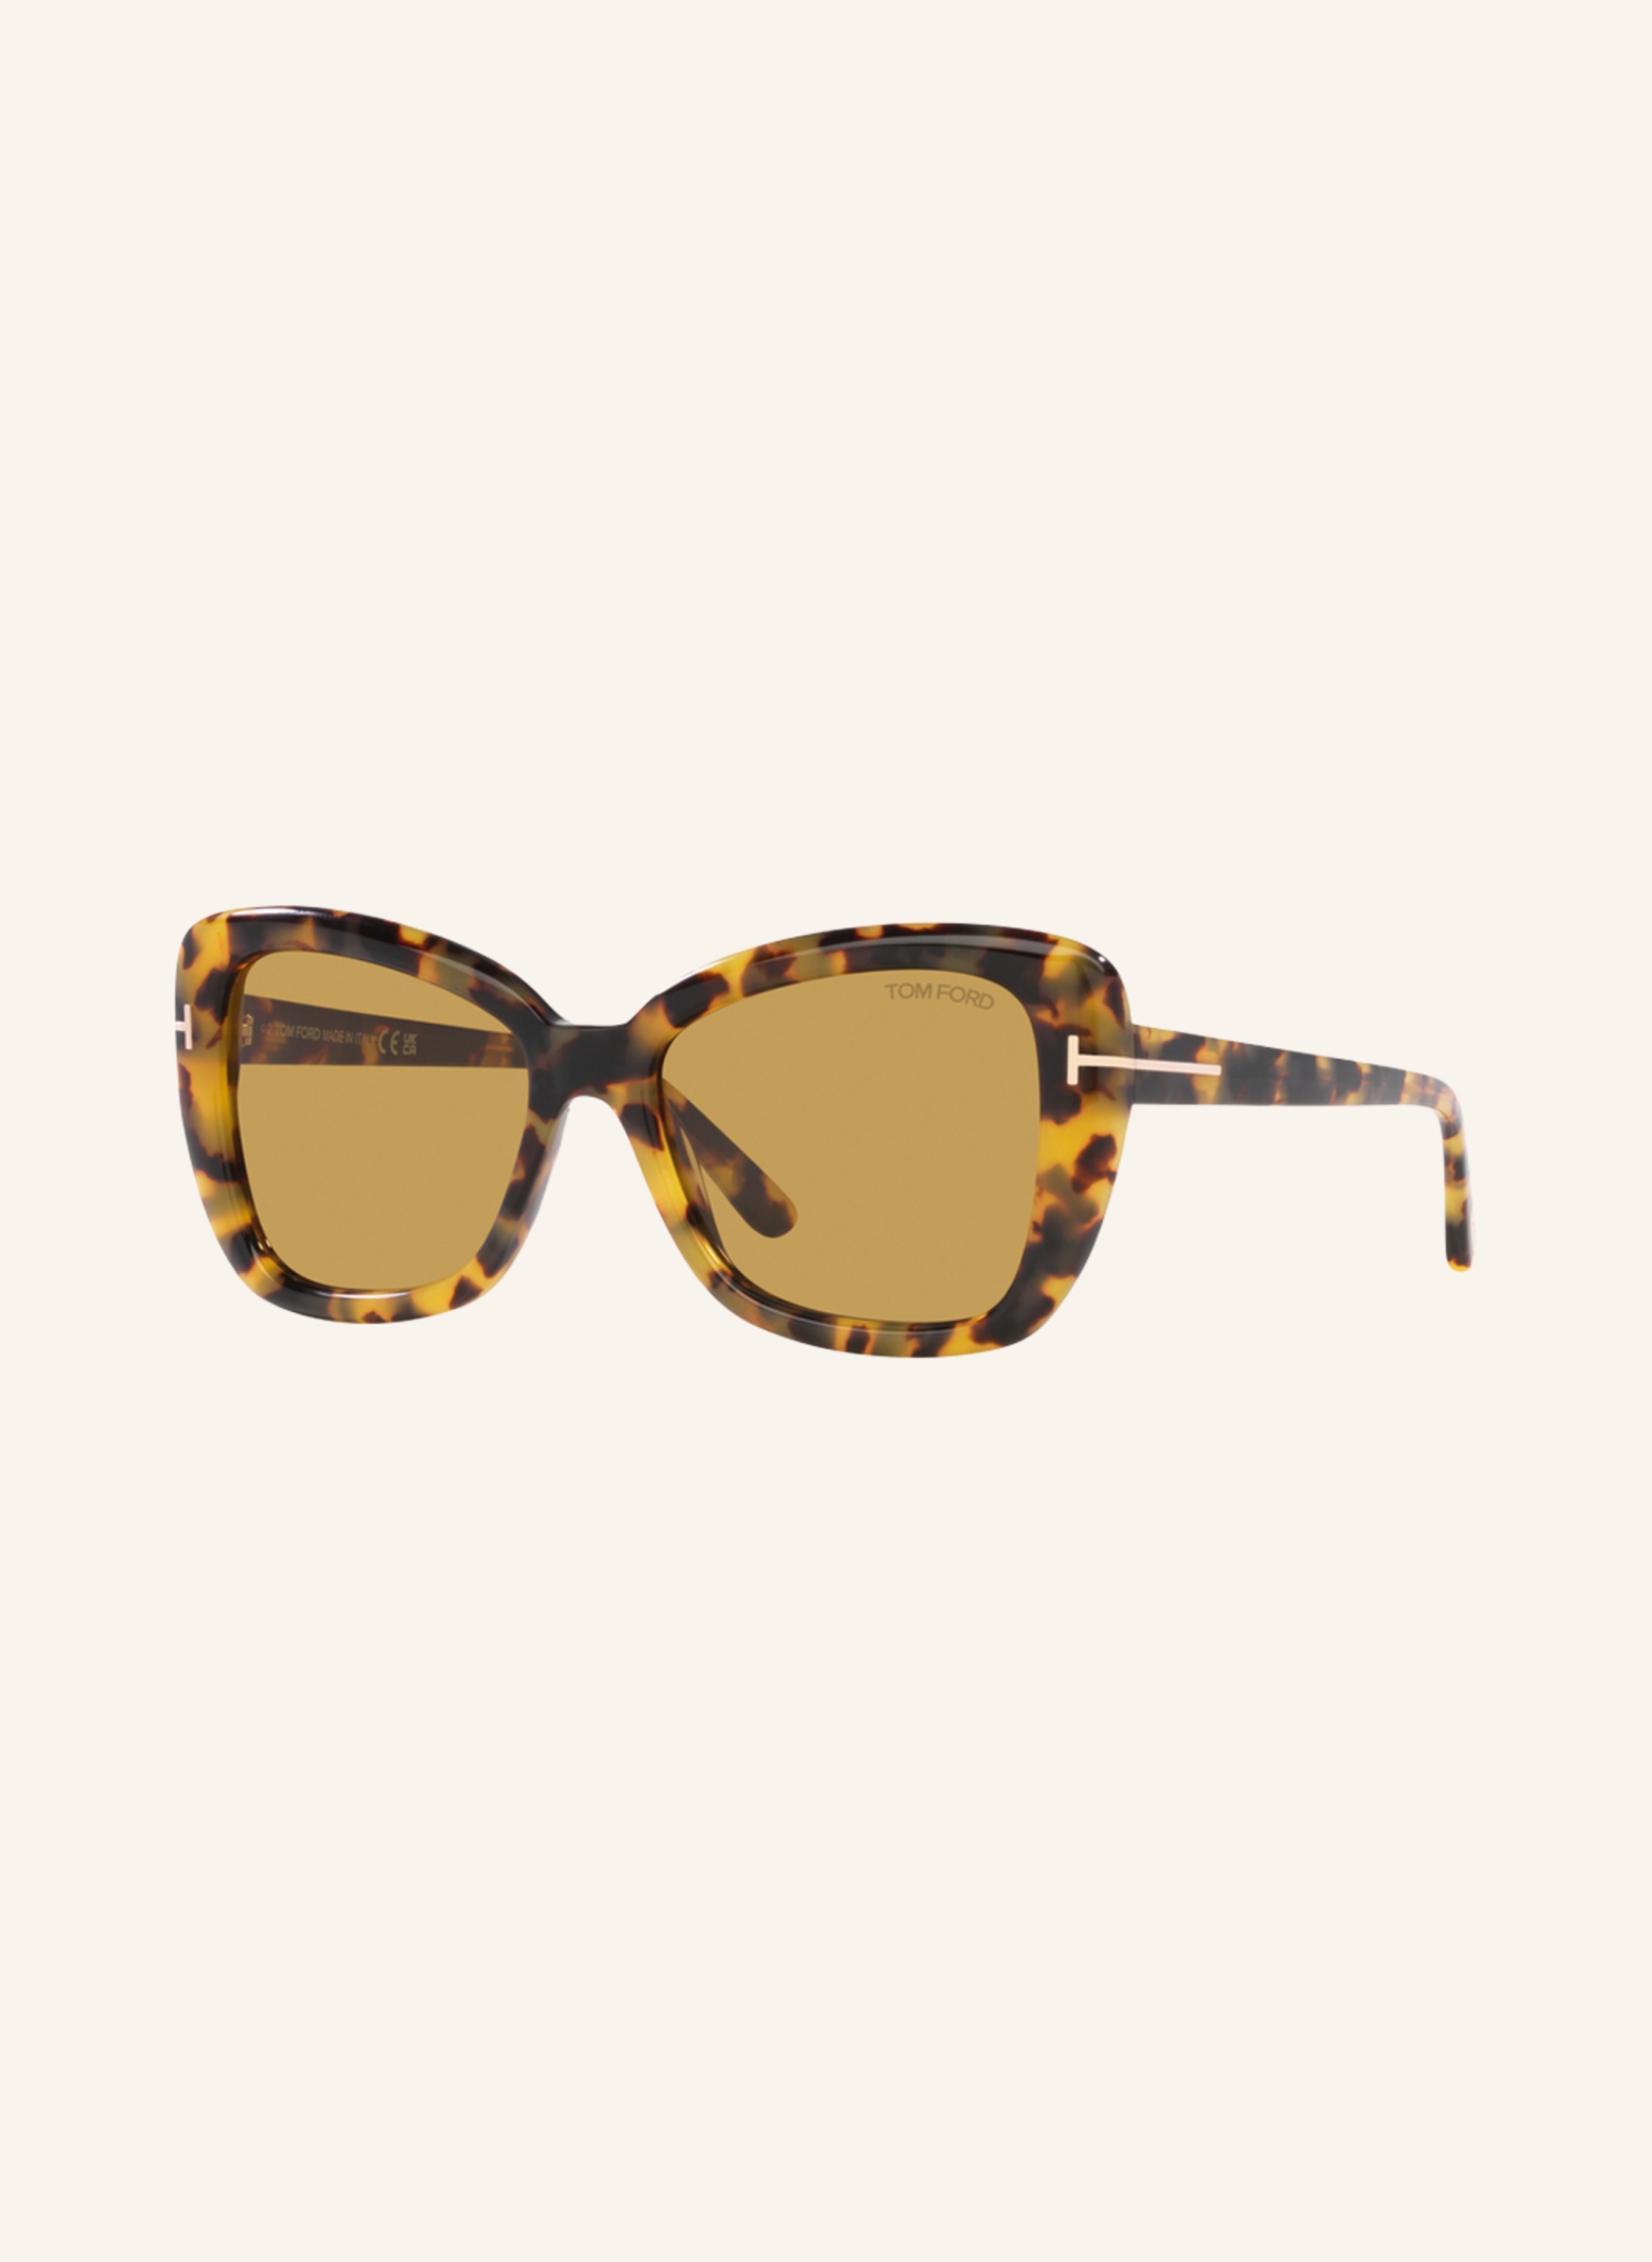 TOM FORD Sunglasses TR001509 in 1800d1 - havana/ brown | Breuninger